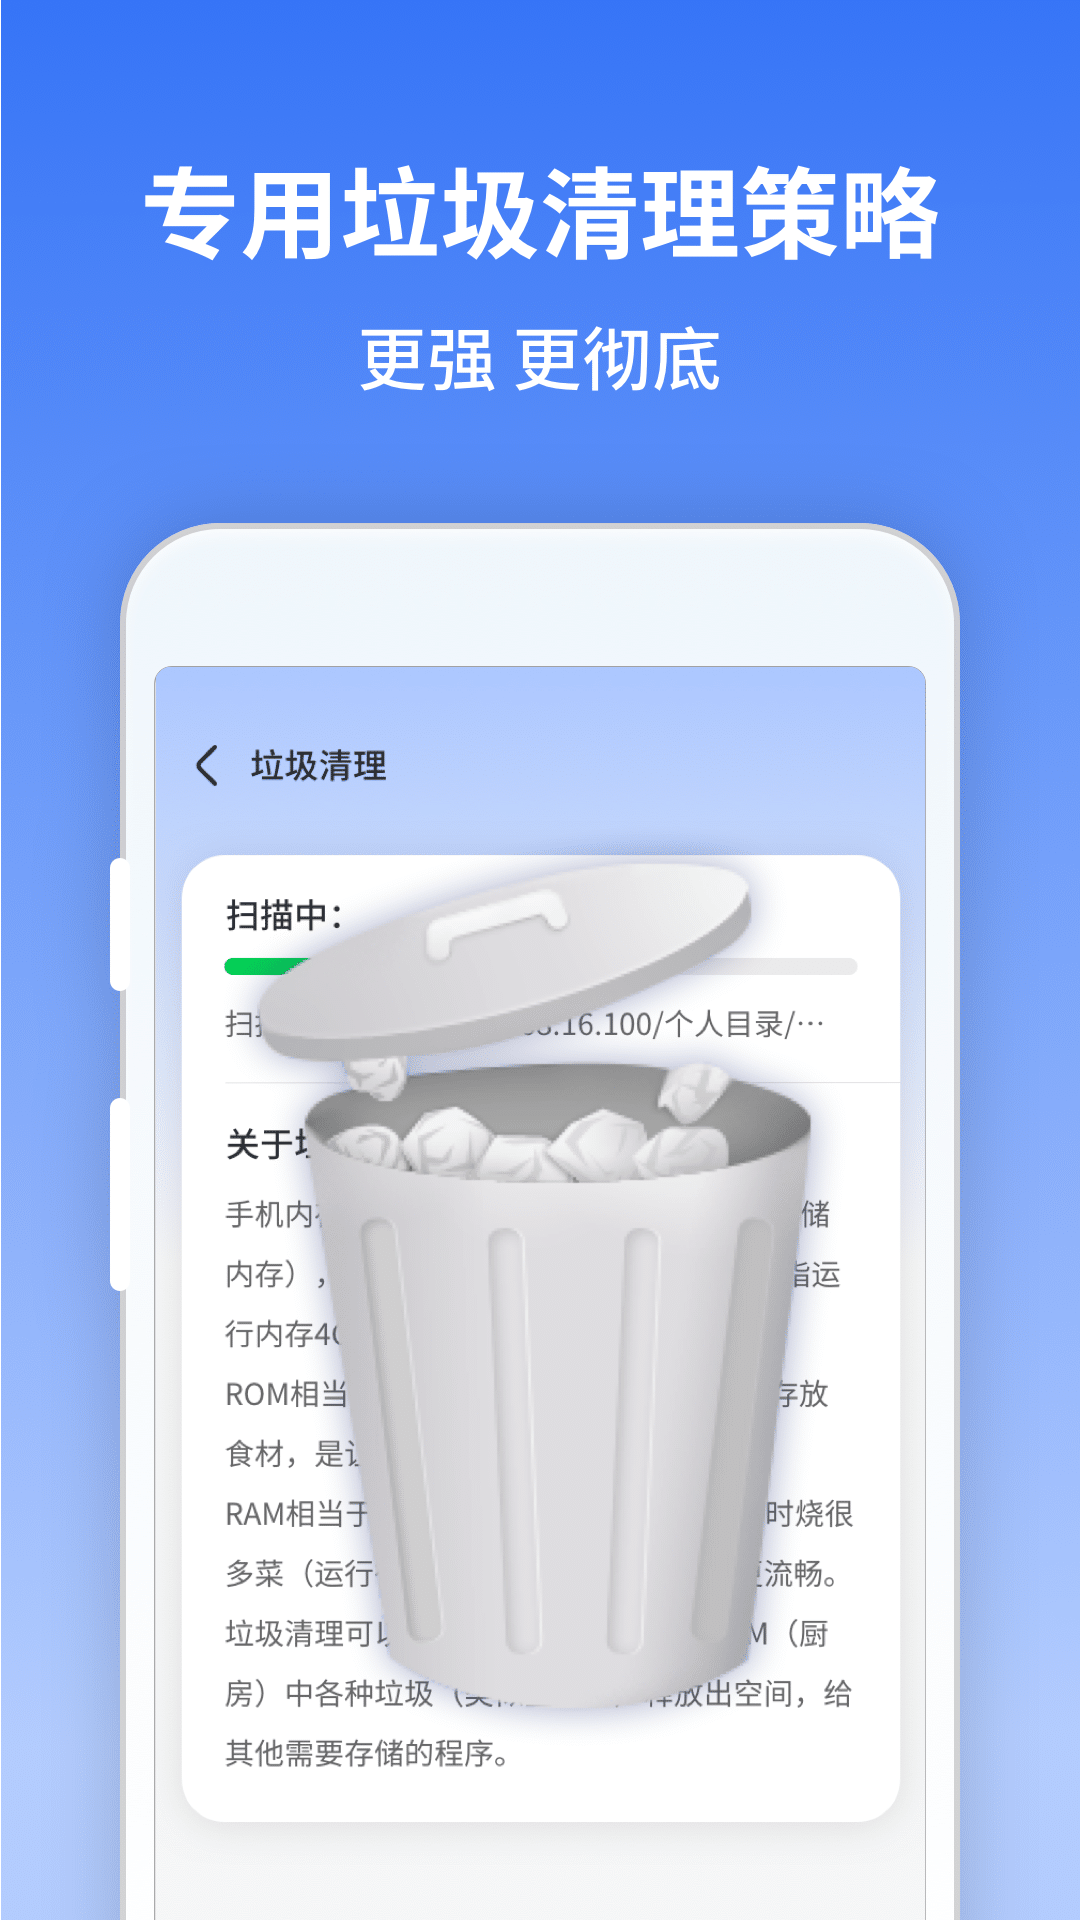 慧点清理大师app最新版 v1.0.220815.464 安卓版1